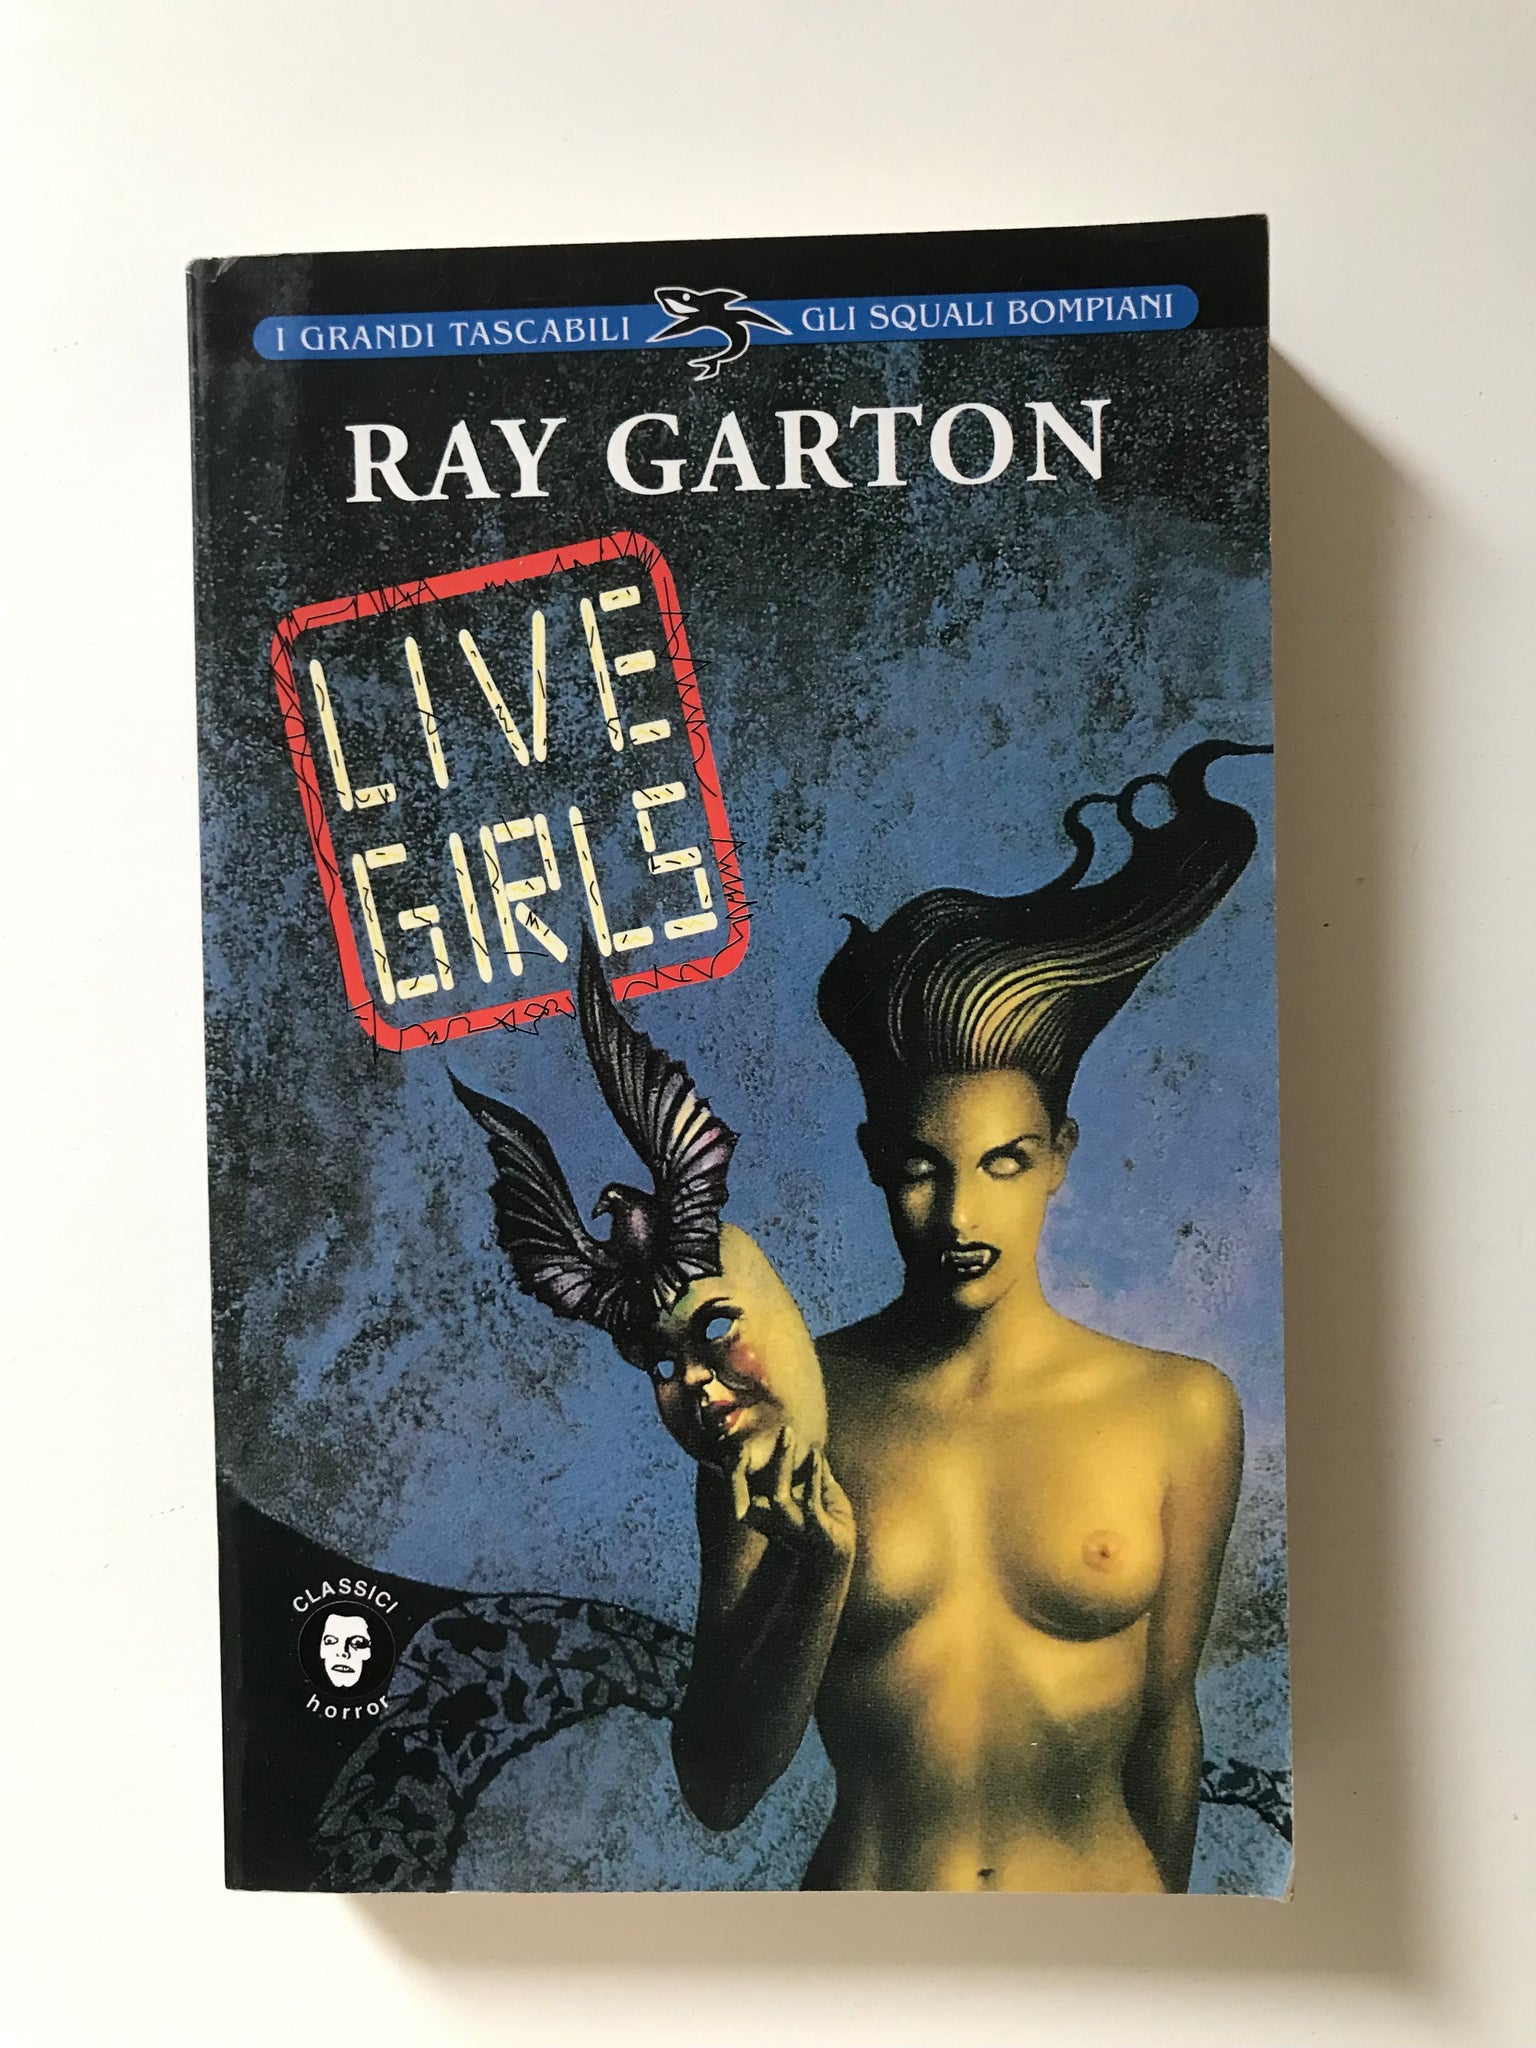 Ray Garton - Live girls – piudiunlibro